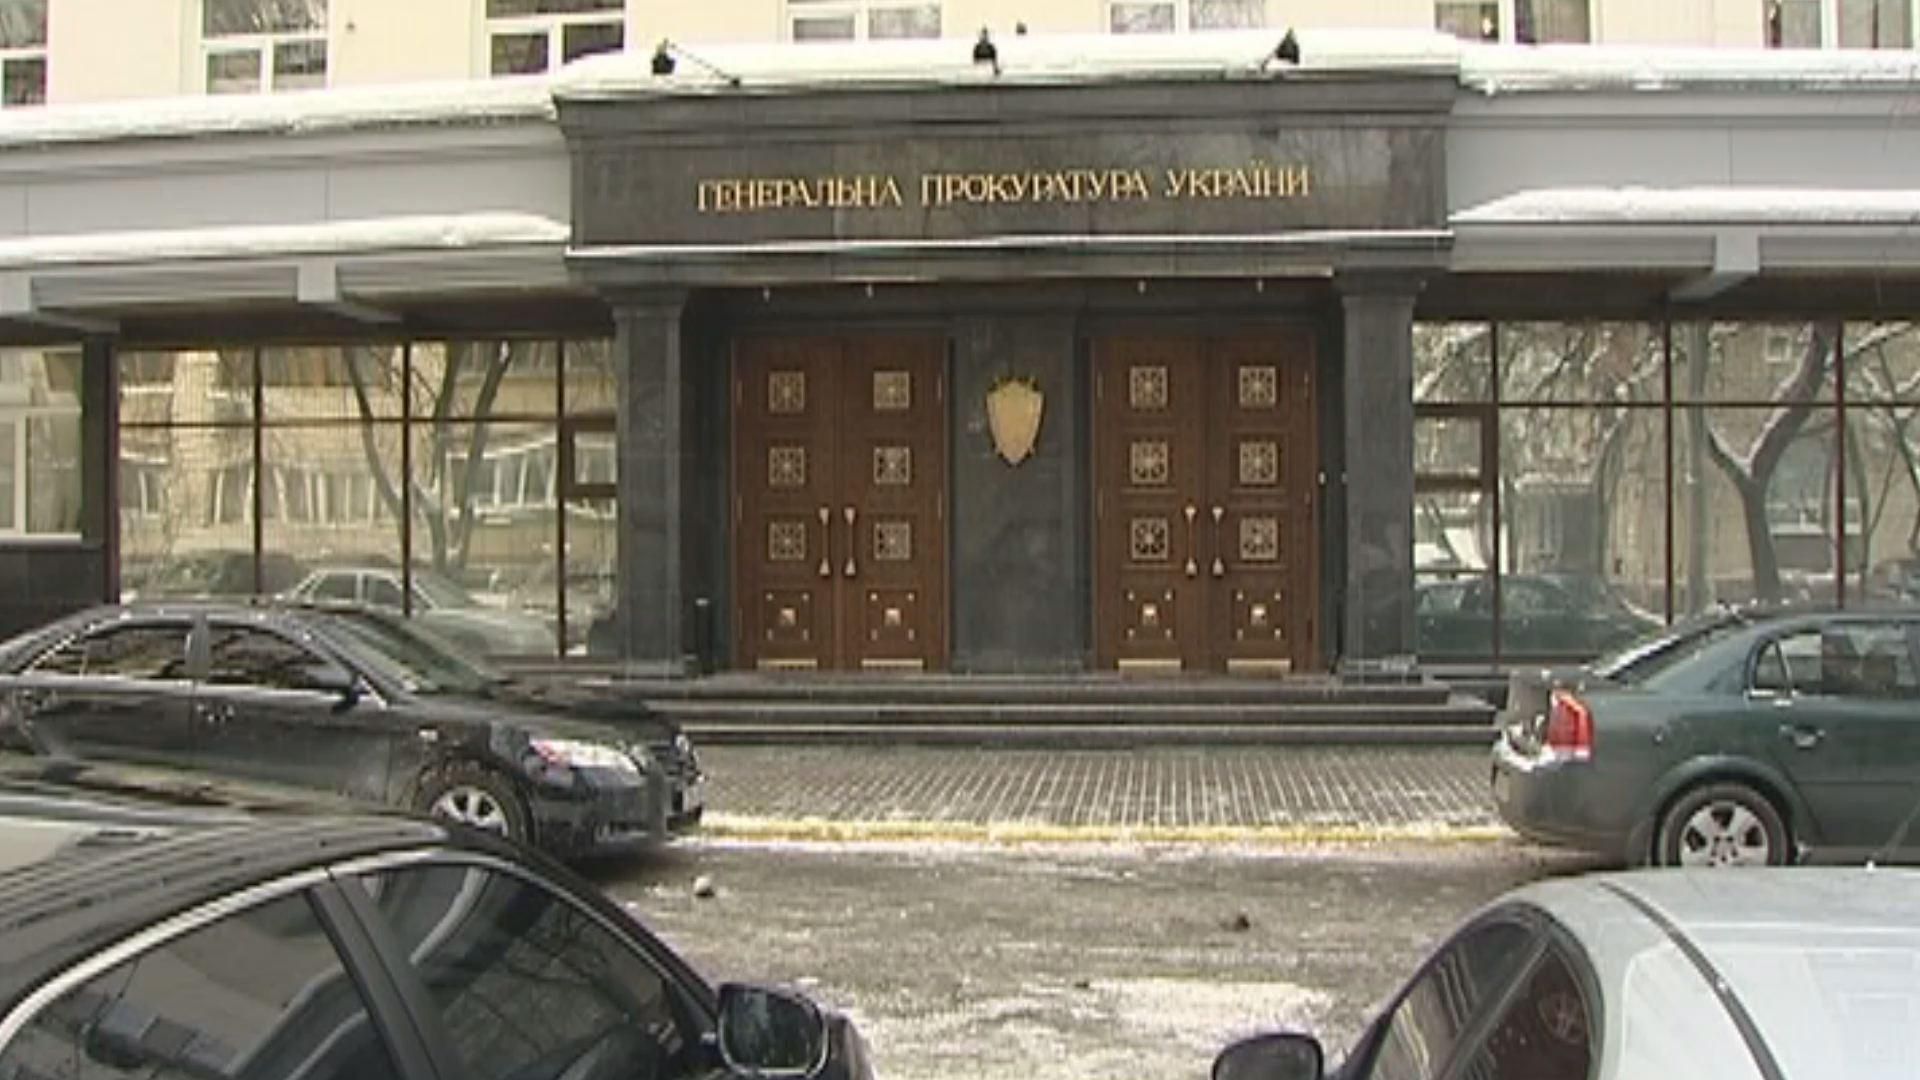 "Объединение "Самопомич" хочет вернуть киевлянам их законное имущество